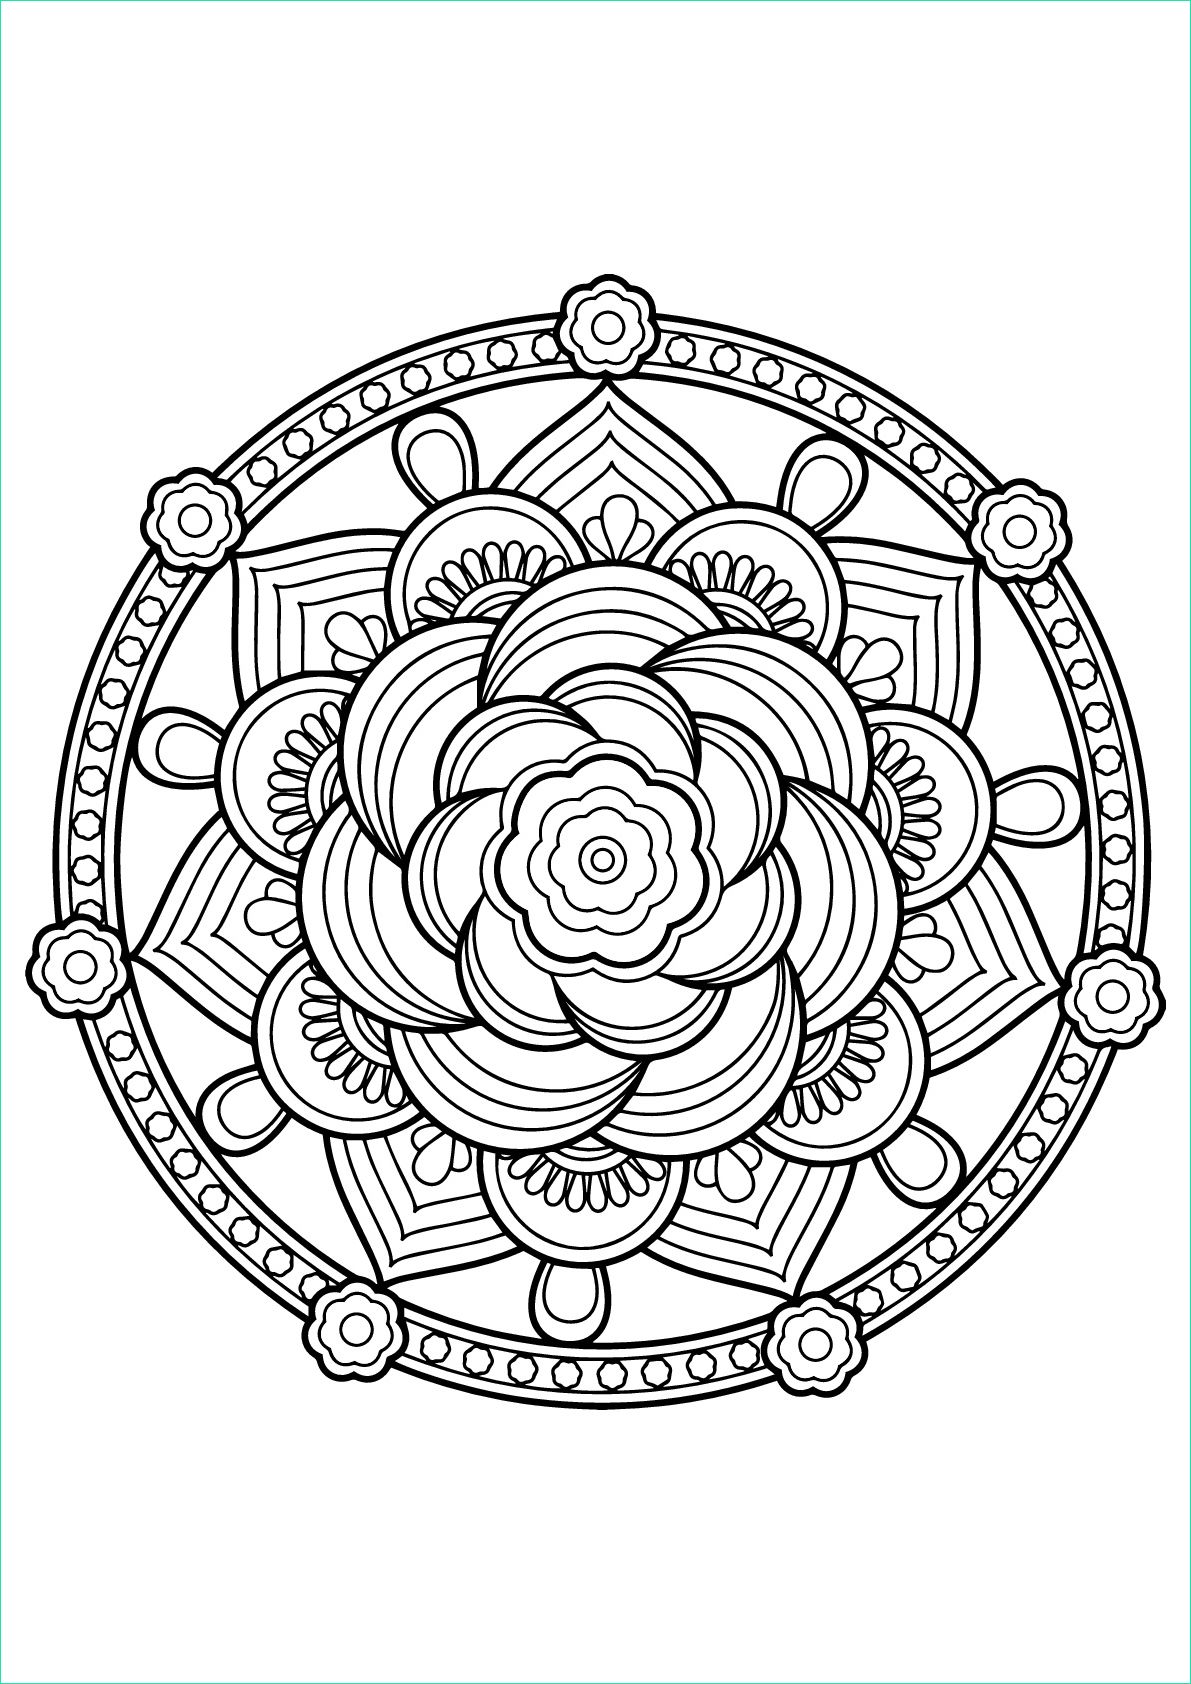 Mandala à Imprimer Pour Adulte Nouveau Collection Mandala Livre Gratuit 7 Mandalas Coloriages Difficiles